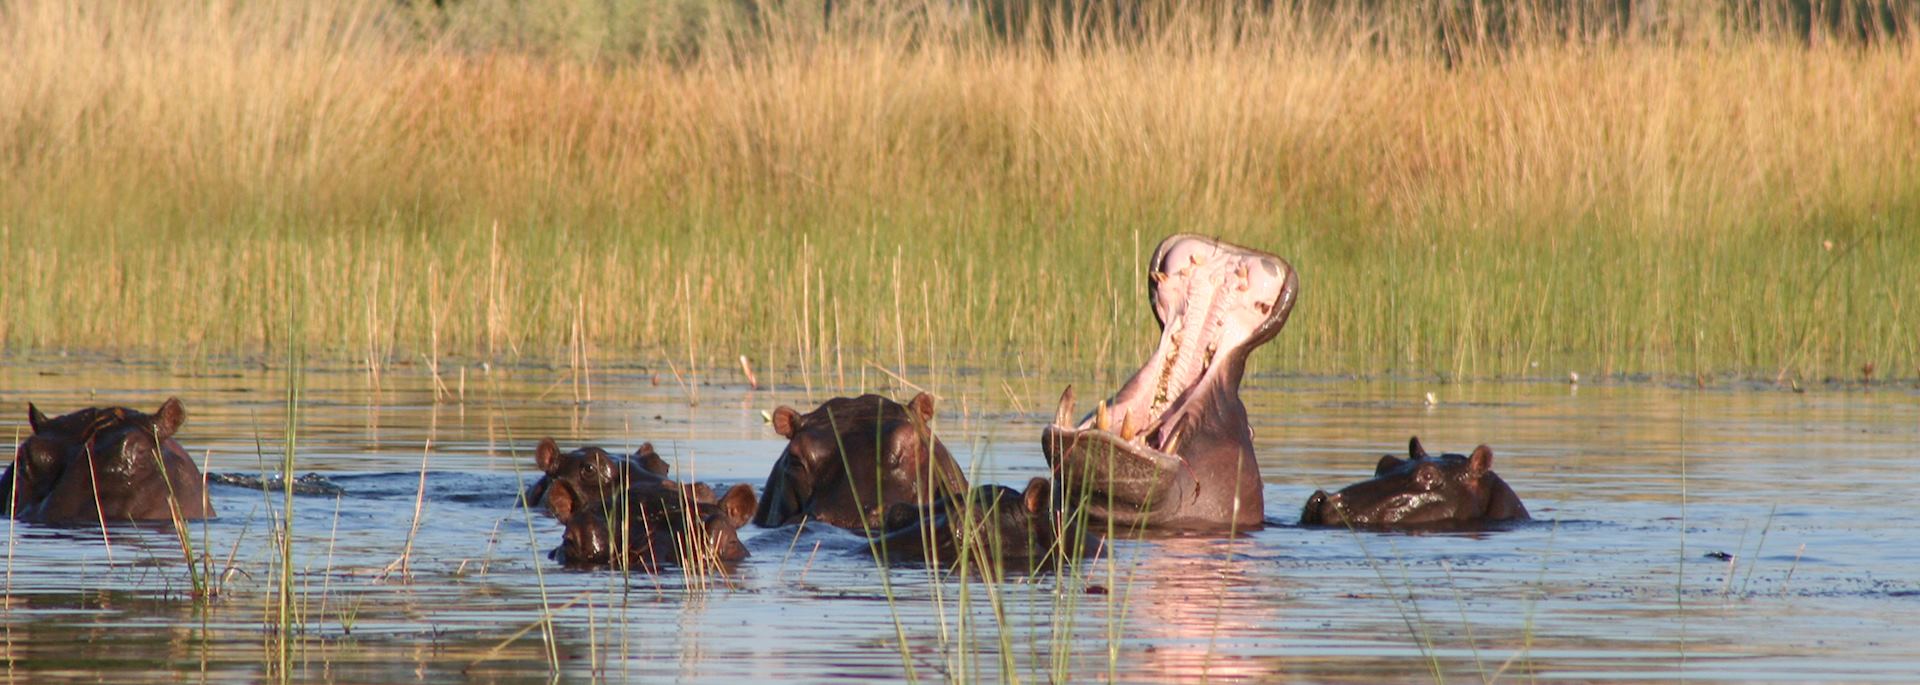 Hippo in Xudum Concession